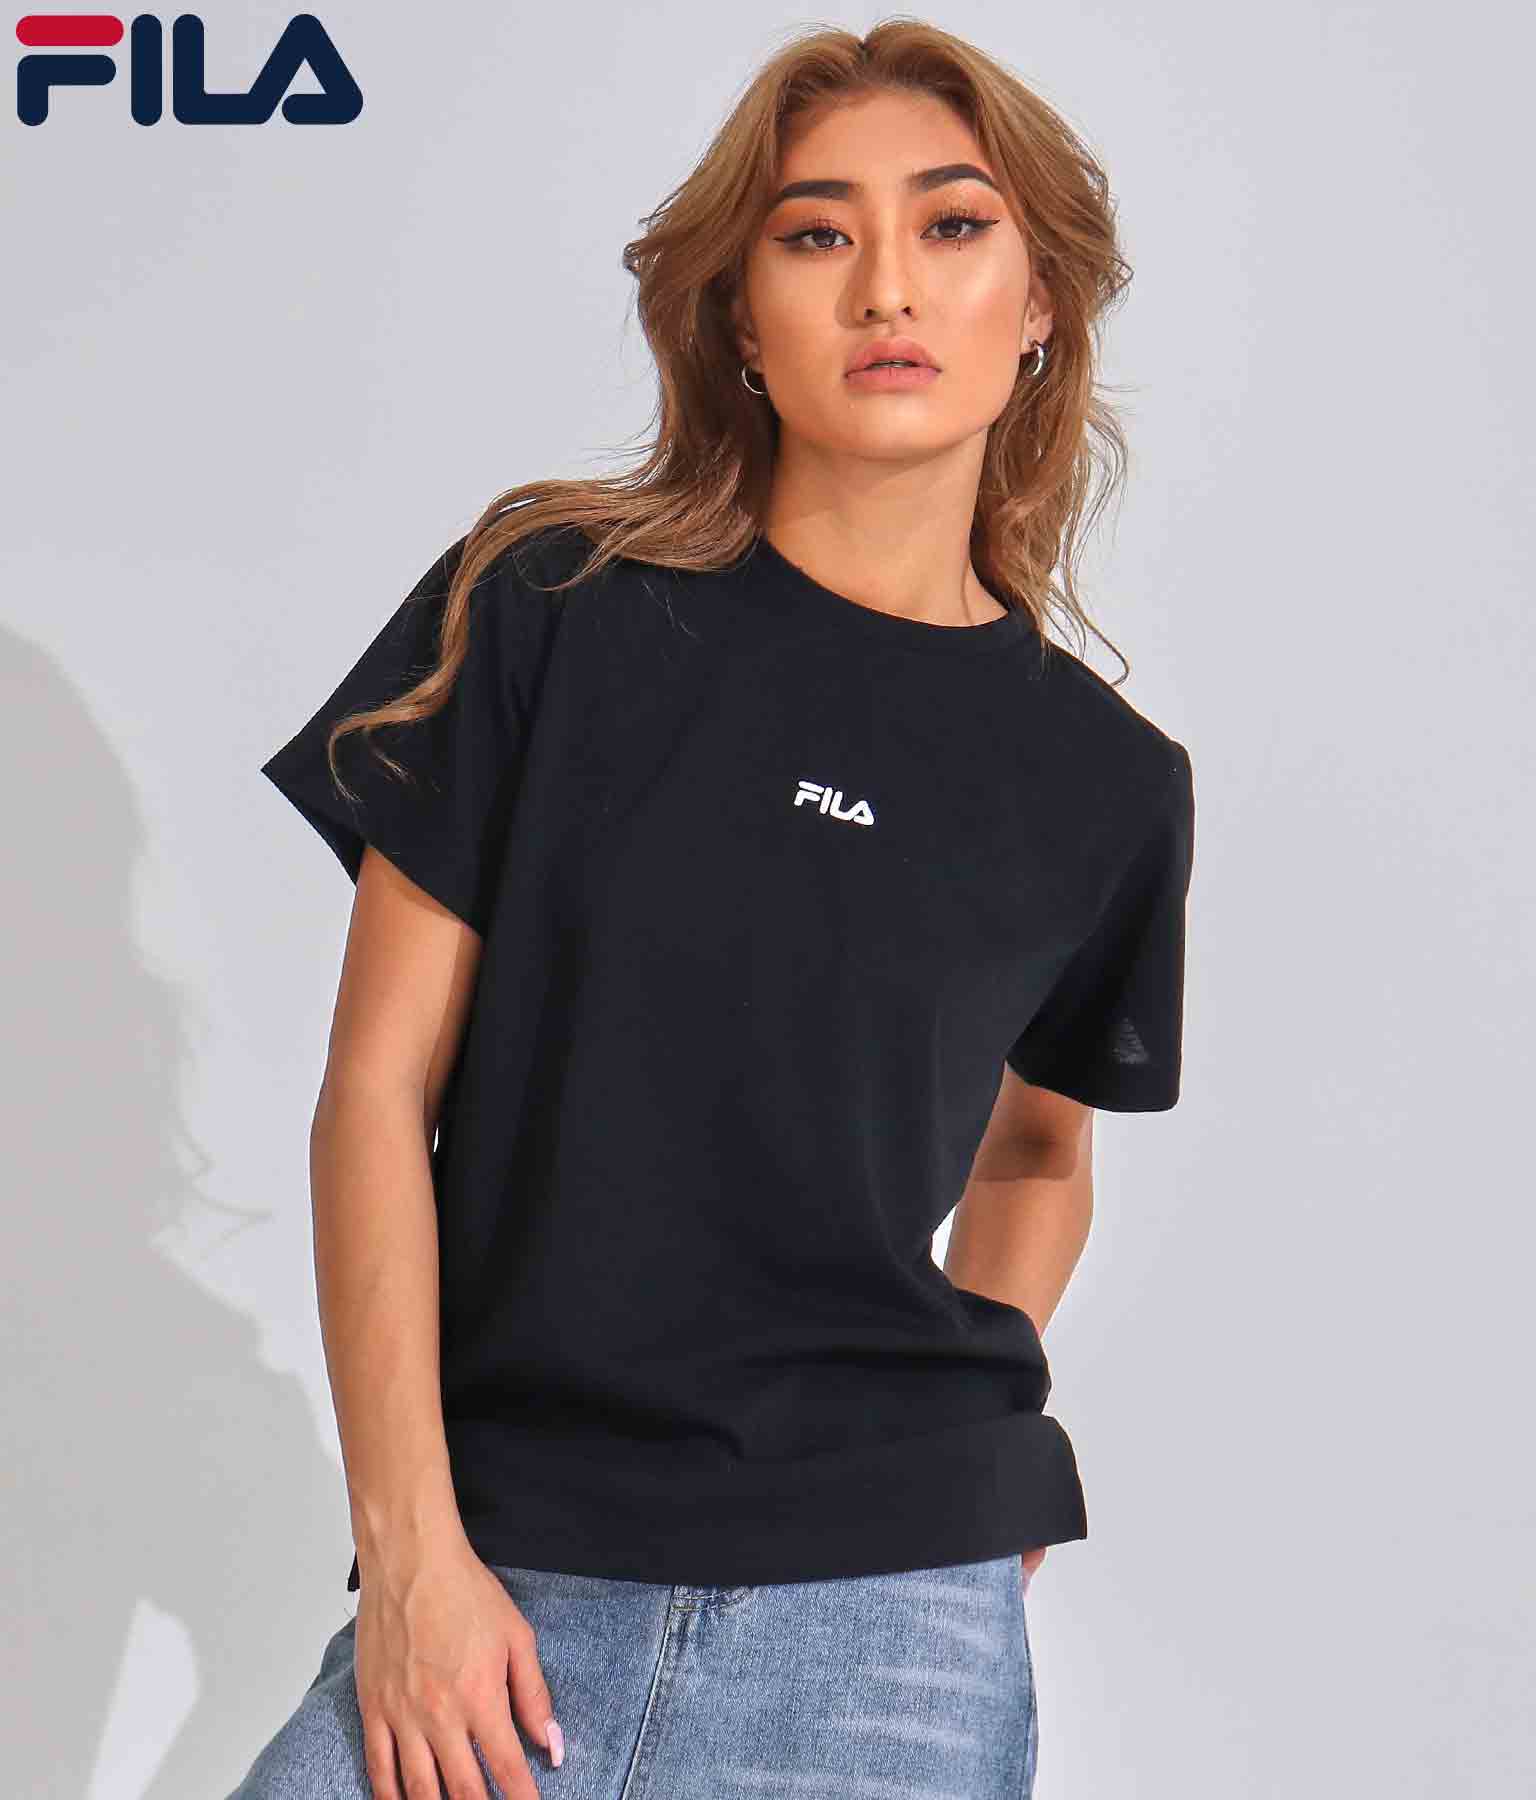 Fila ワンポイント ドライtシャツ トップス Tシャツ Fila2 委託 レディースファッション通販anapオンライン